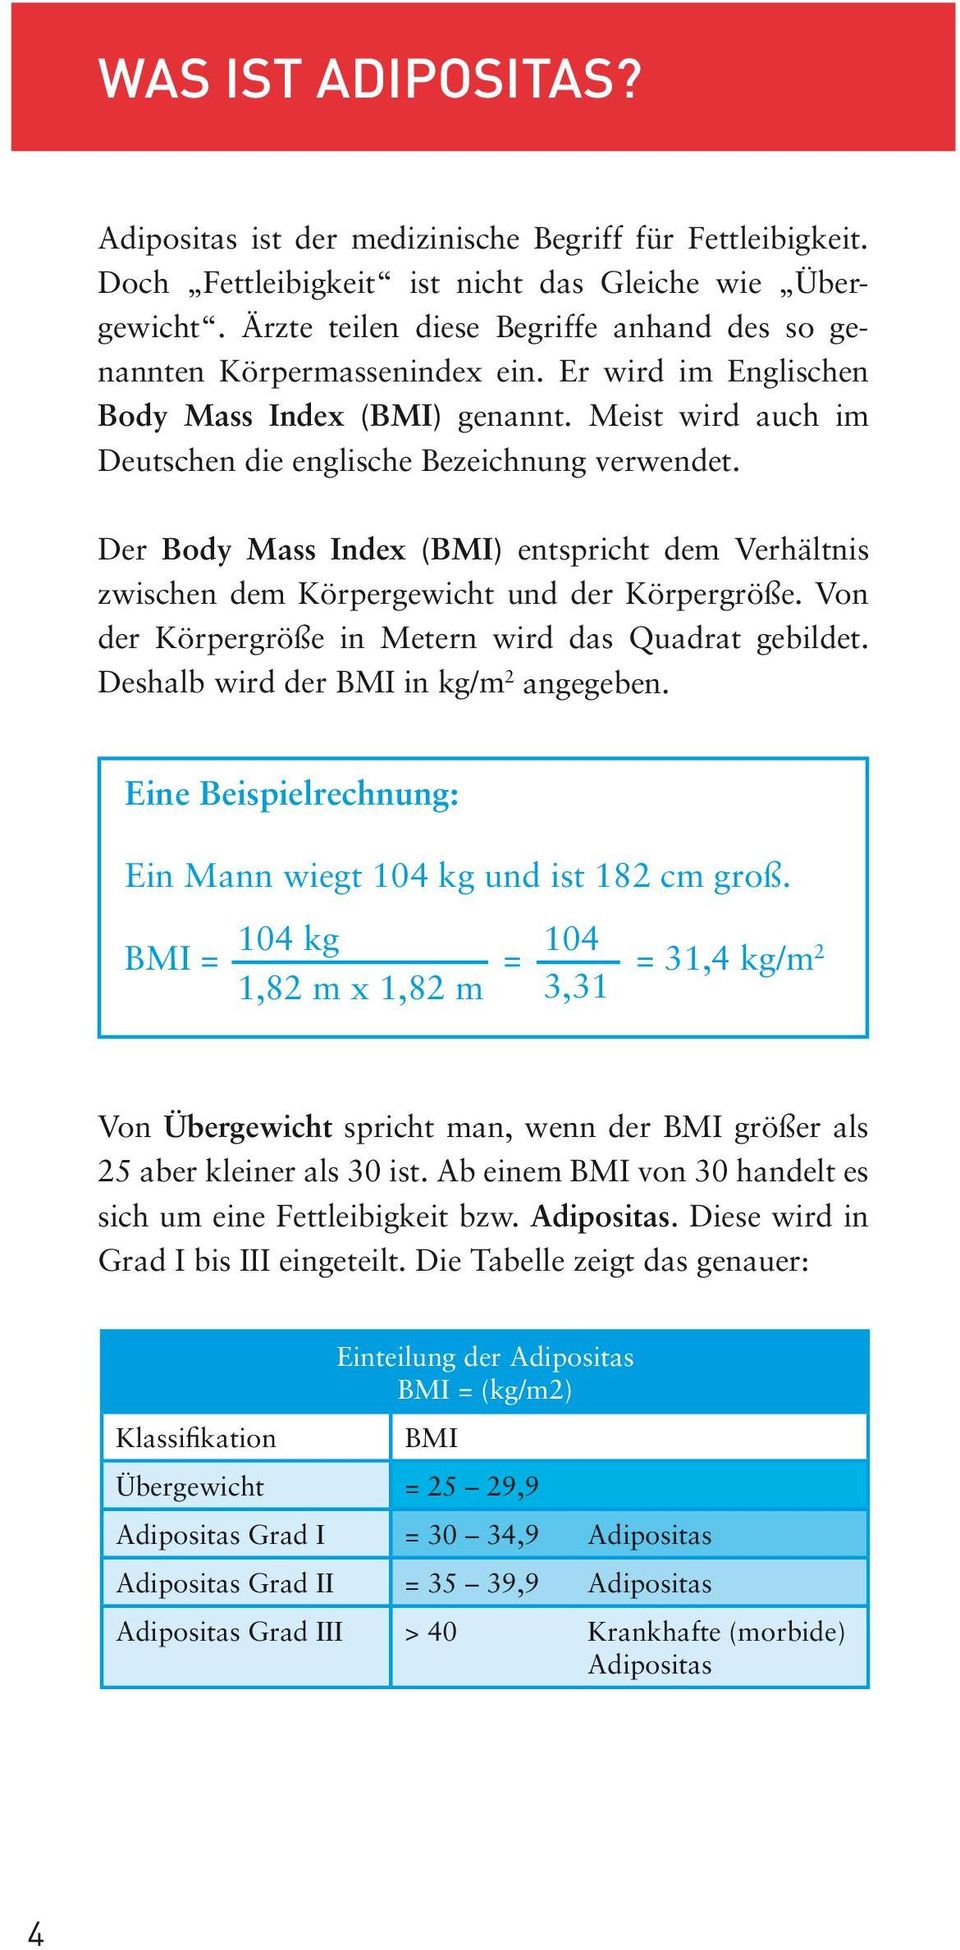 Der Body Mass Index (BMI) entspricht dem Verhältnis zwischen dem Körpergewicht und der Körpergröße. Von der Körpergröße in Metern wird das Quadrat gebildet. Deshalb wird der BMI in kg/m 2 angegeben.